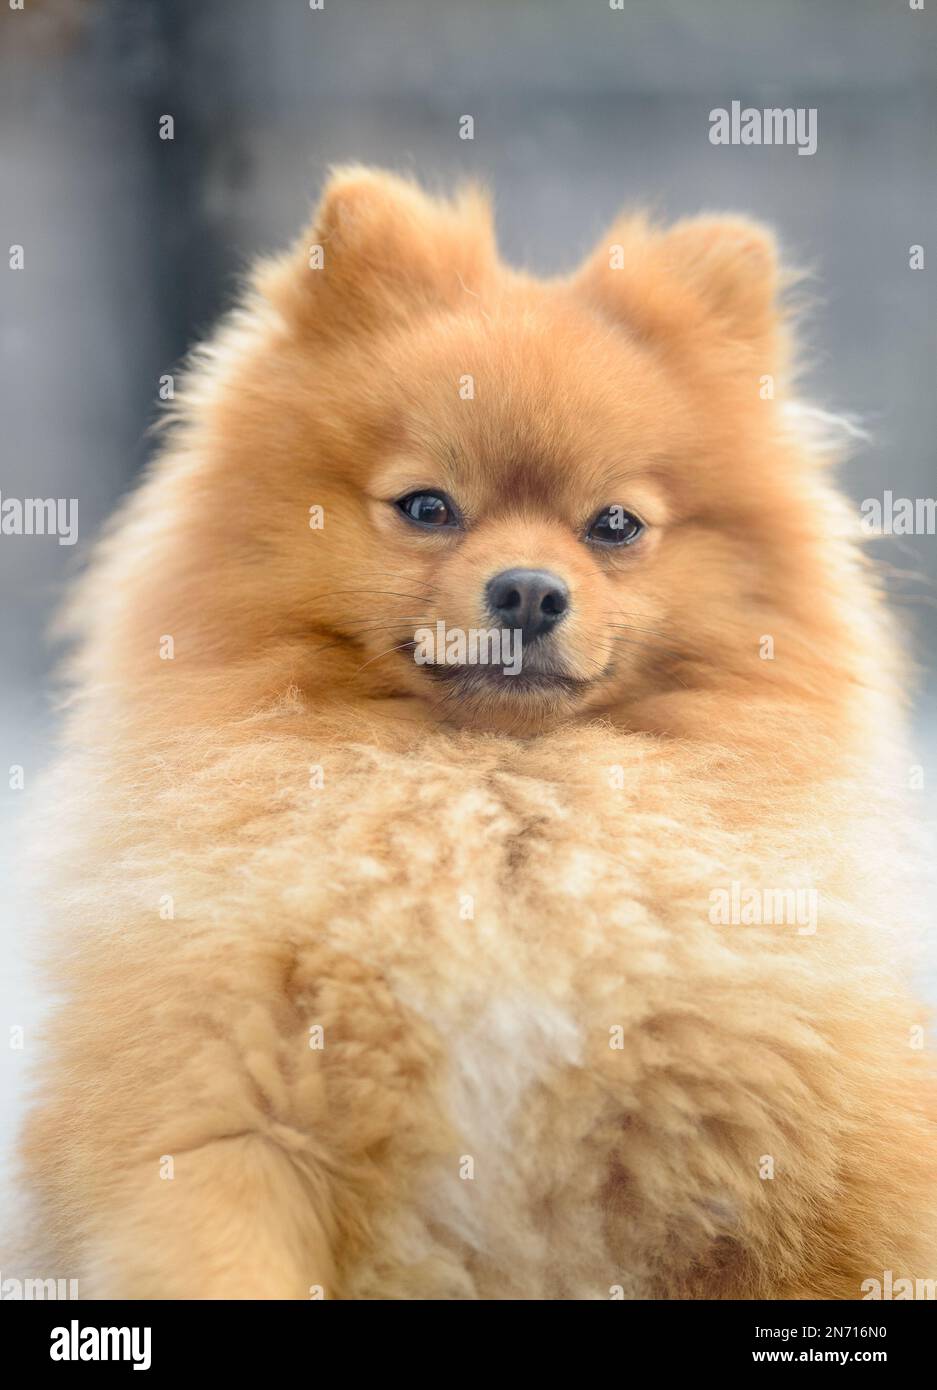 Close-up Portrait of a Pomeranian dog Stock Photo